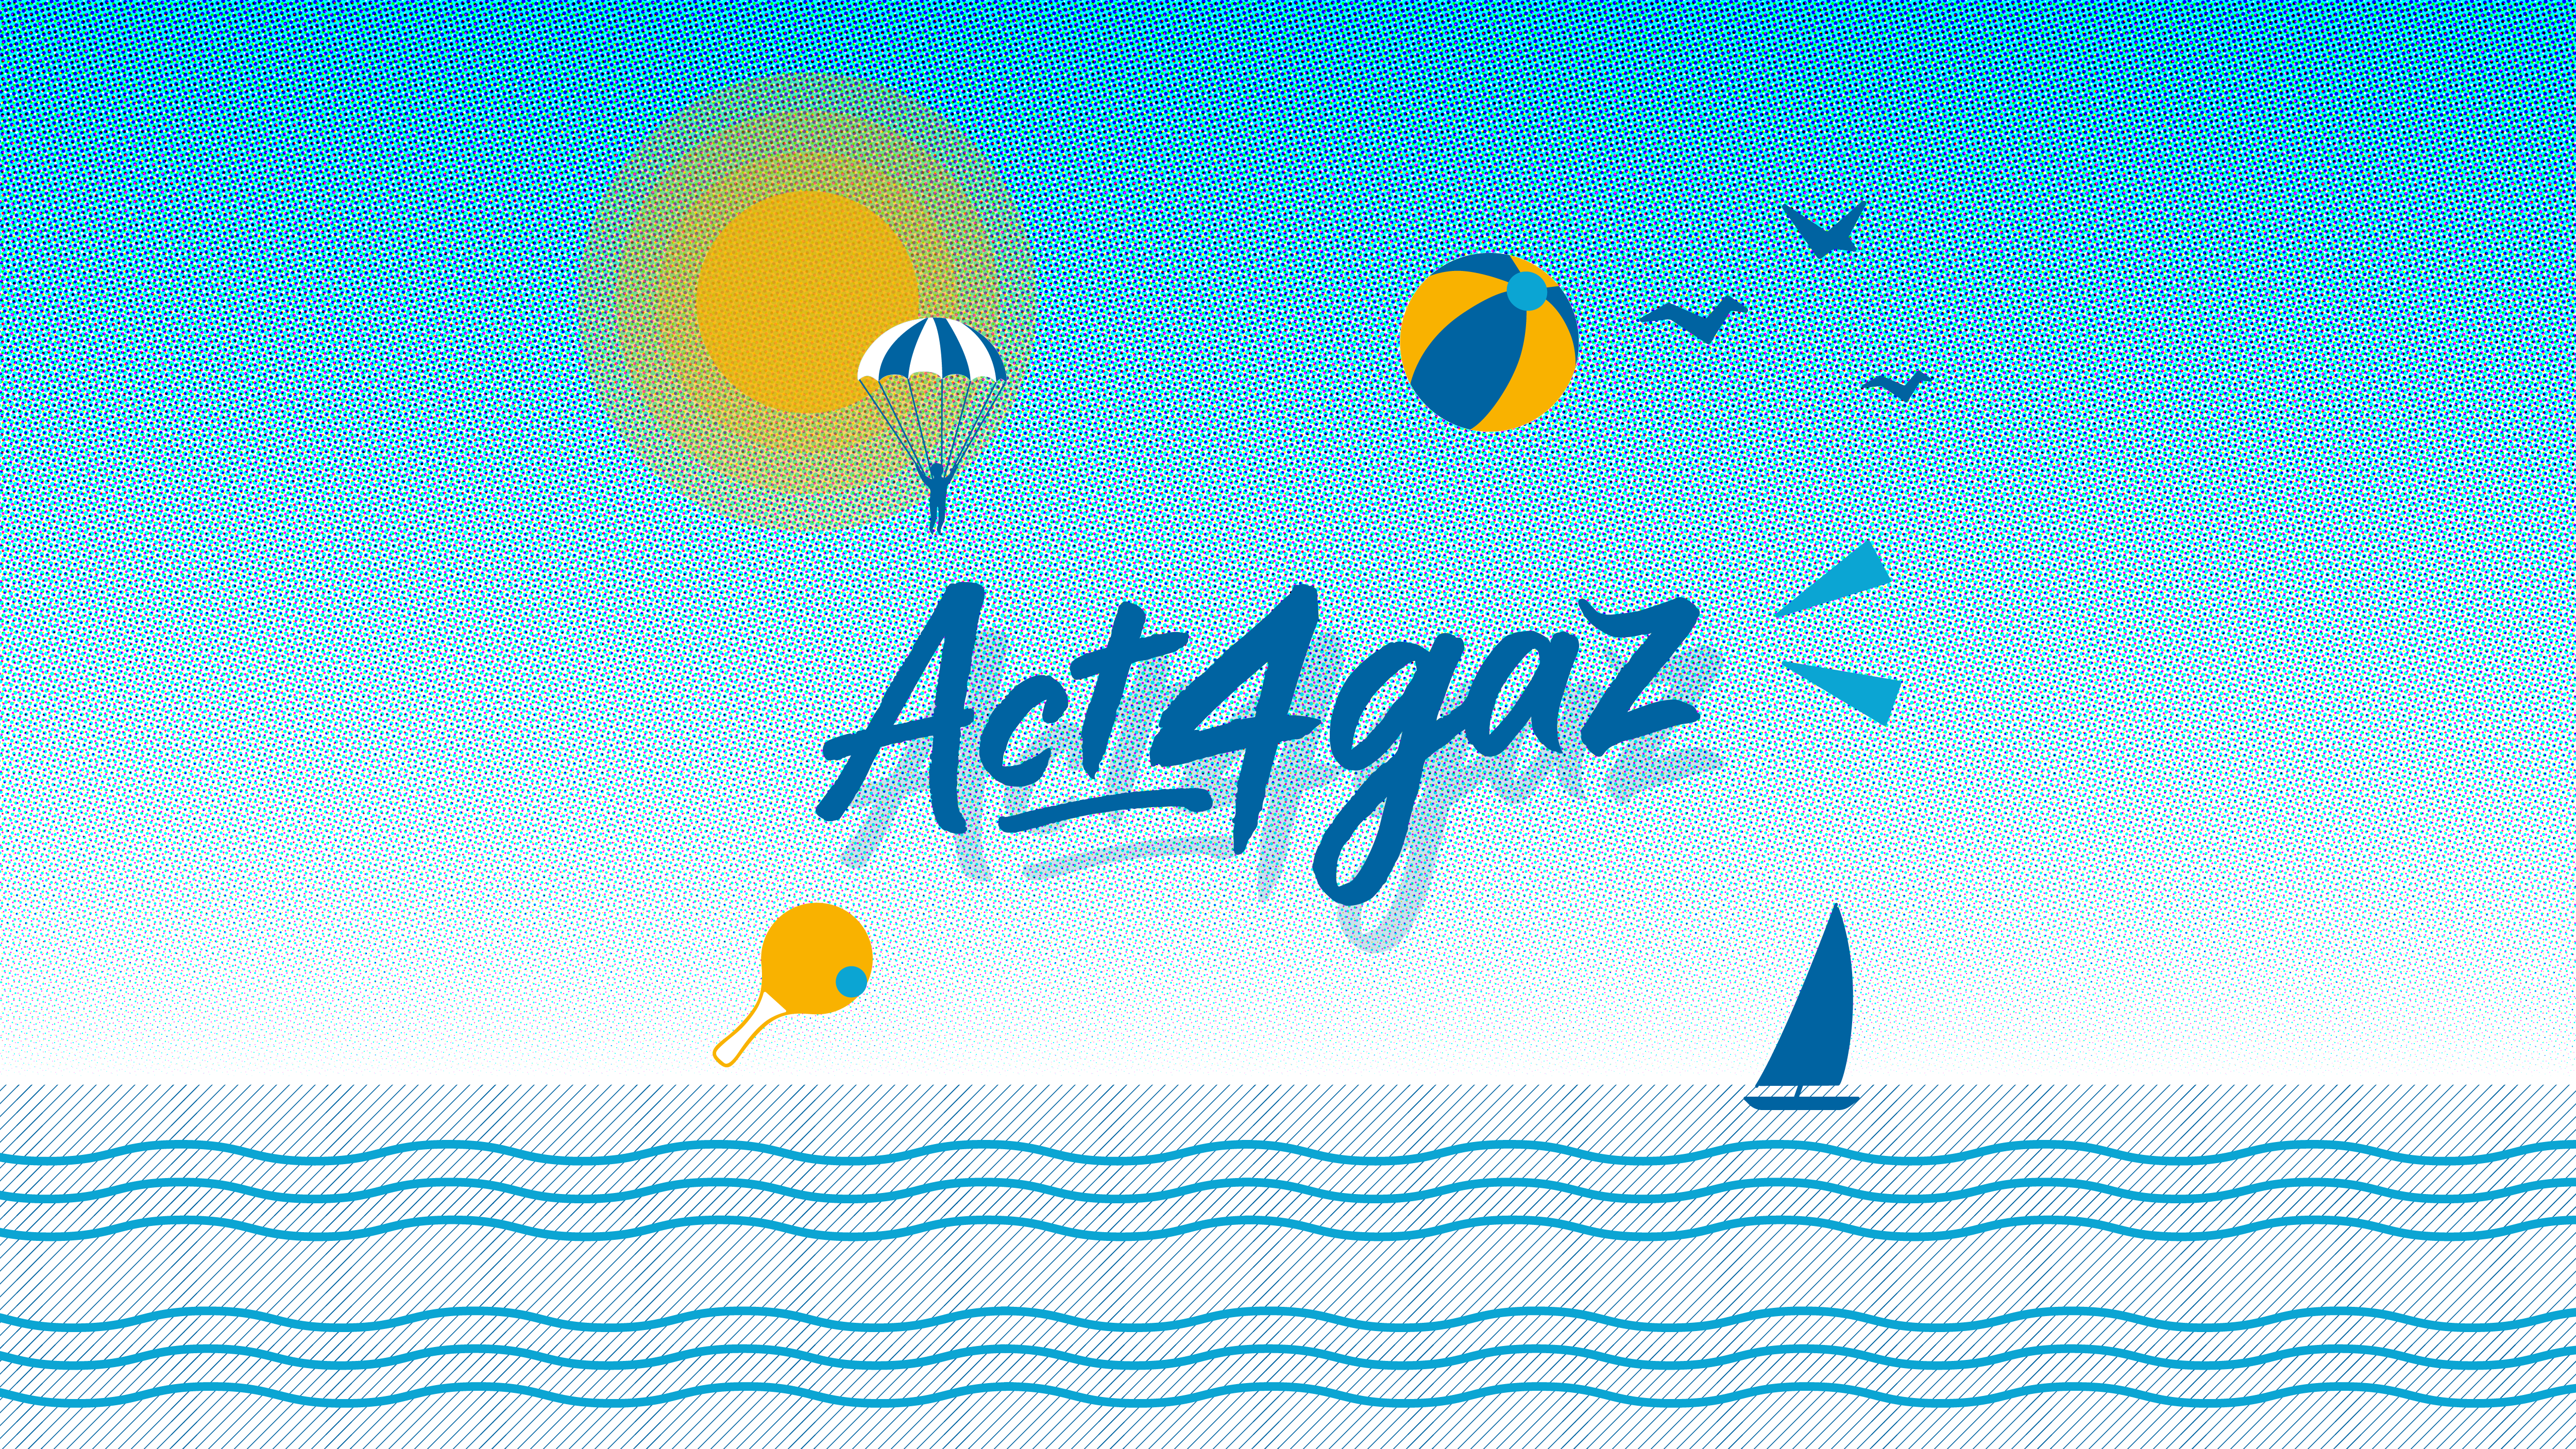 Logo Act4gaz et illustrations de plage.